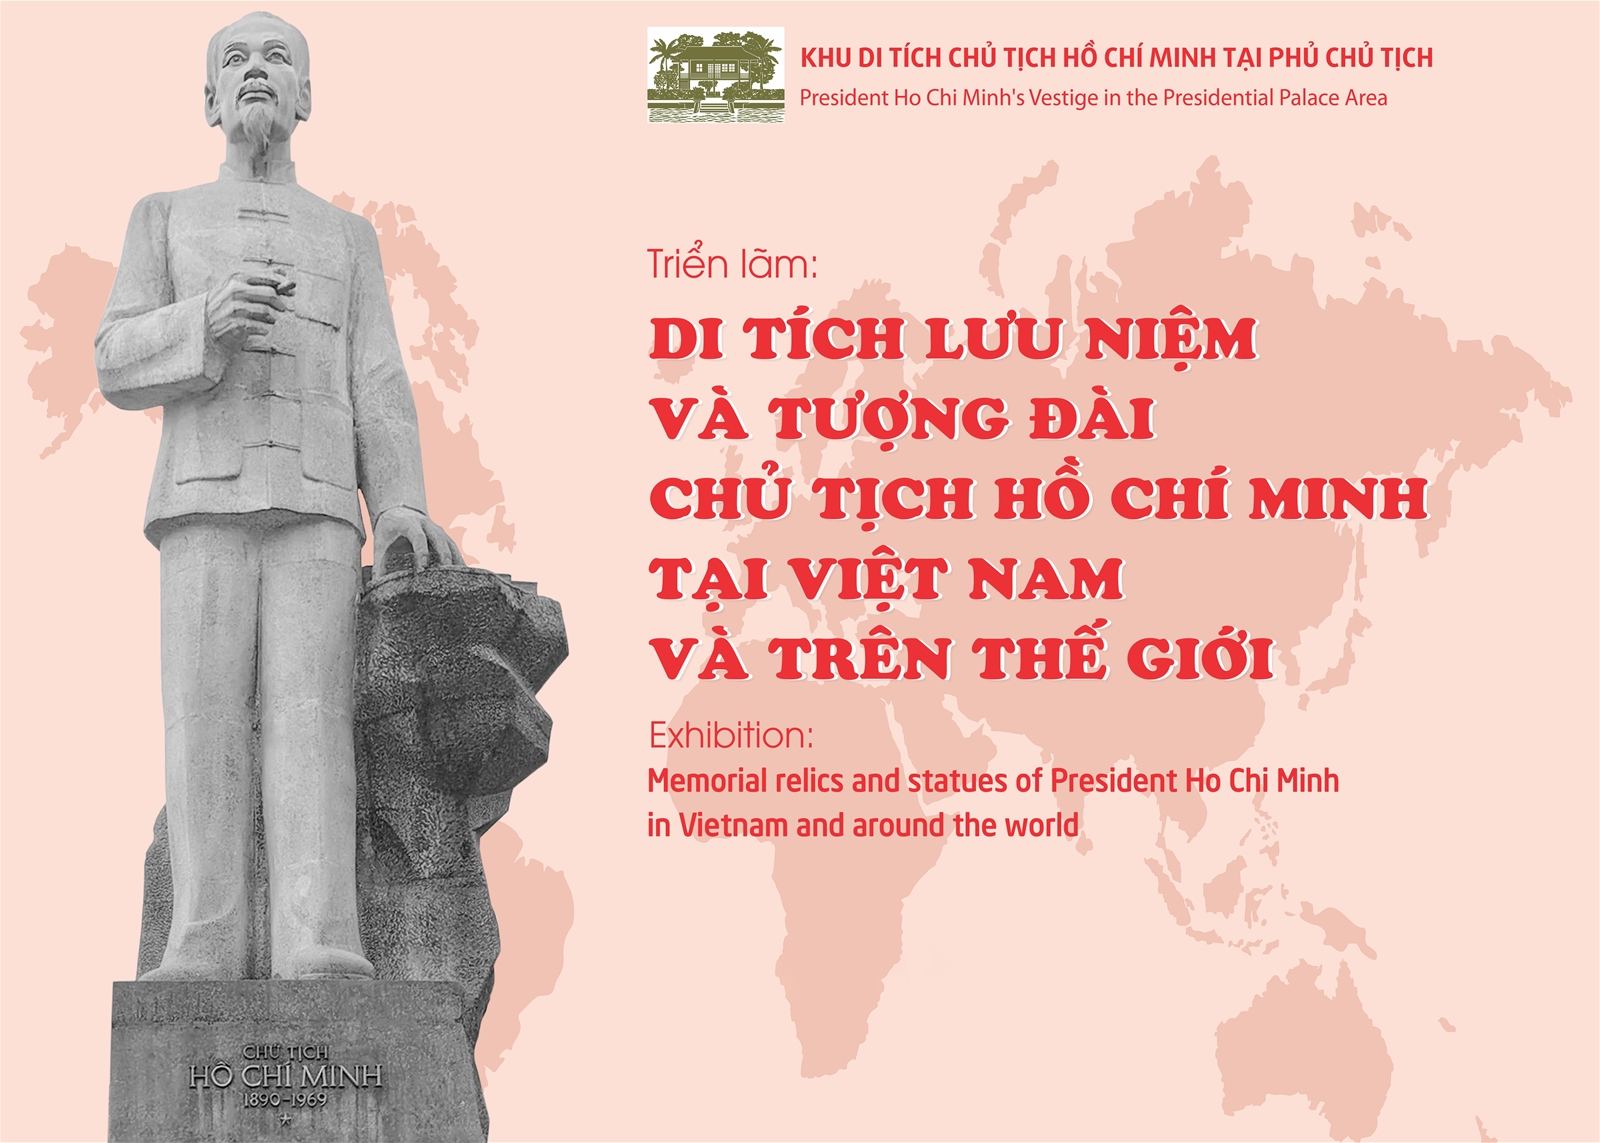 Triển lãm: “Di tích lưu niệm và tượng đài Chủ tịch Hồ Chí Minh tại Việt Nam và trên thế giới”.